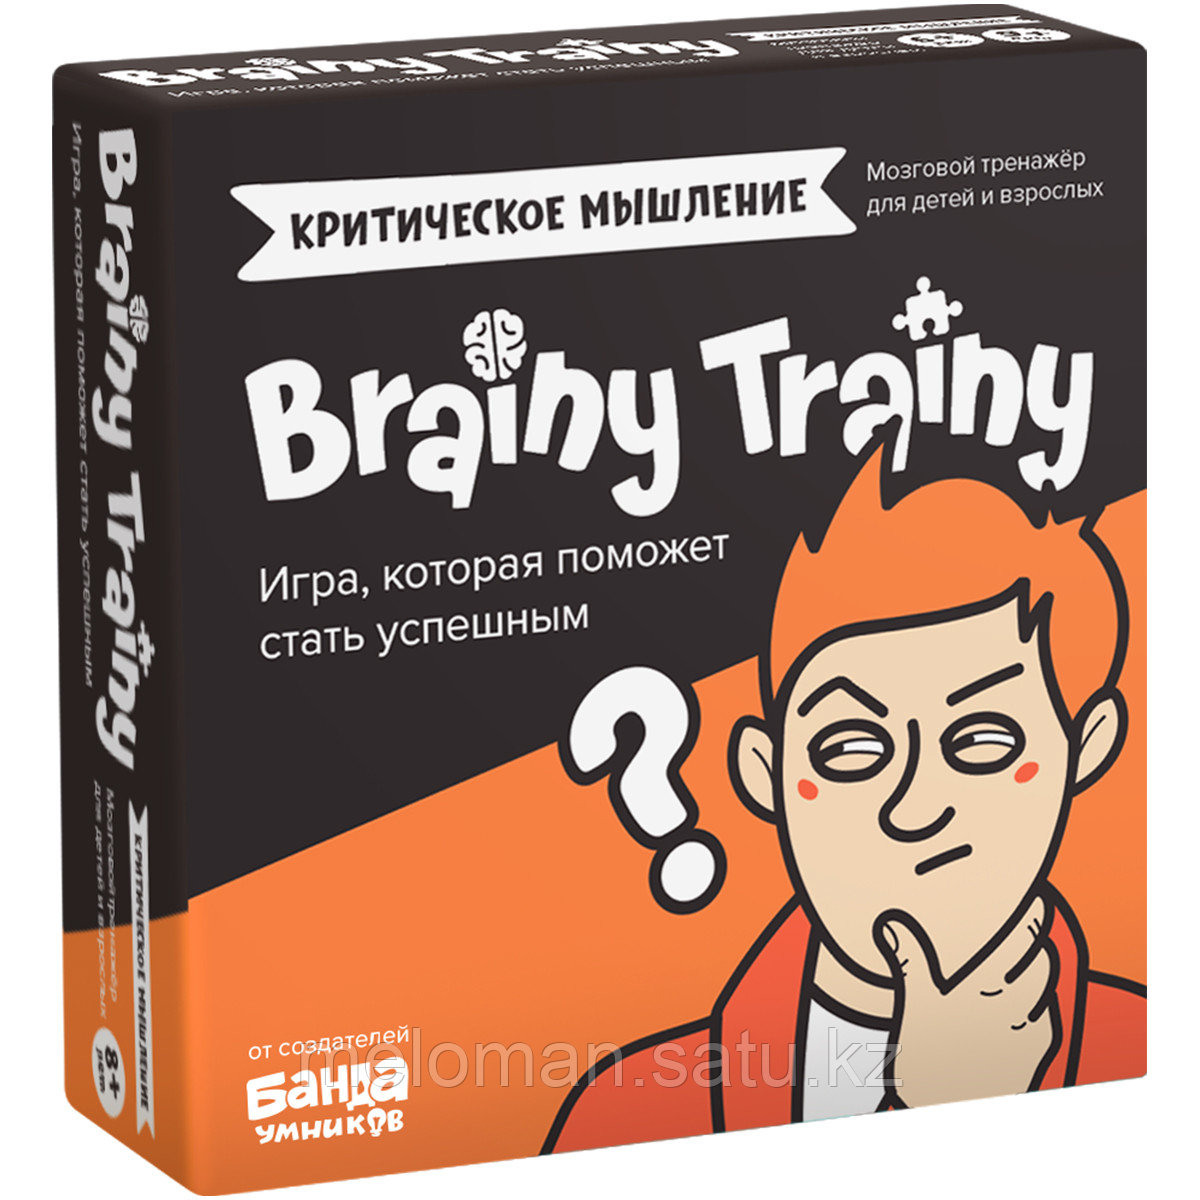 BRAINY TRAINY: Критическое мышление